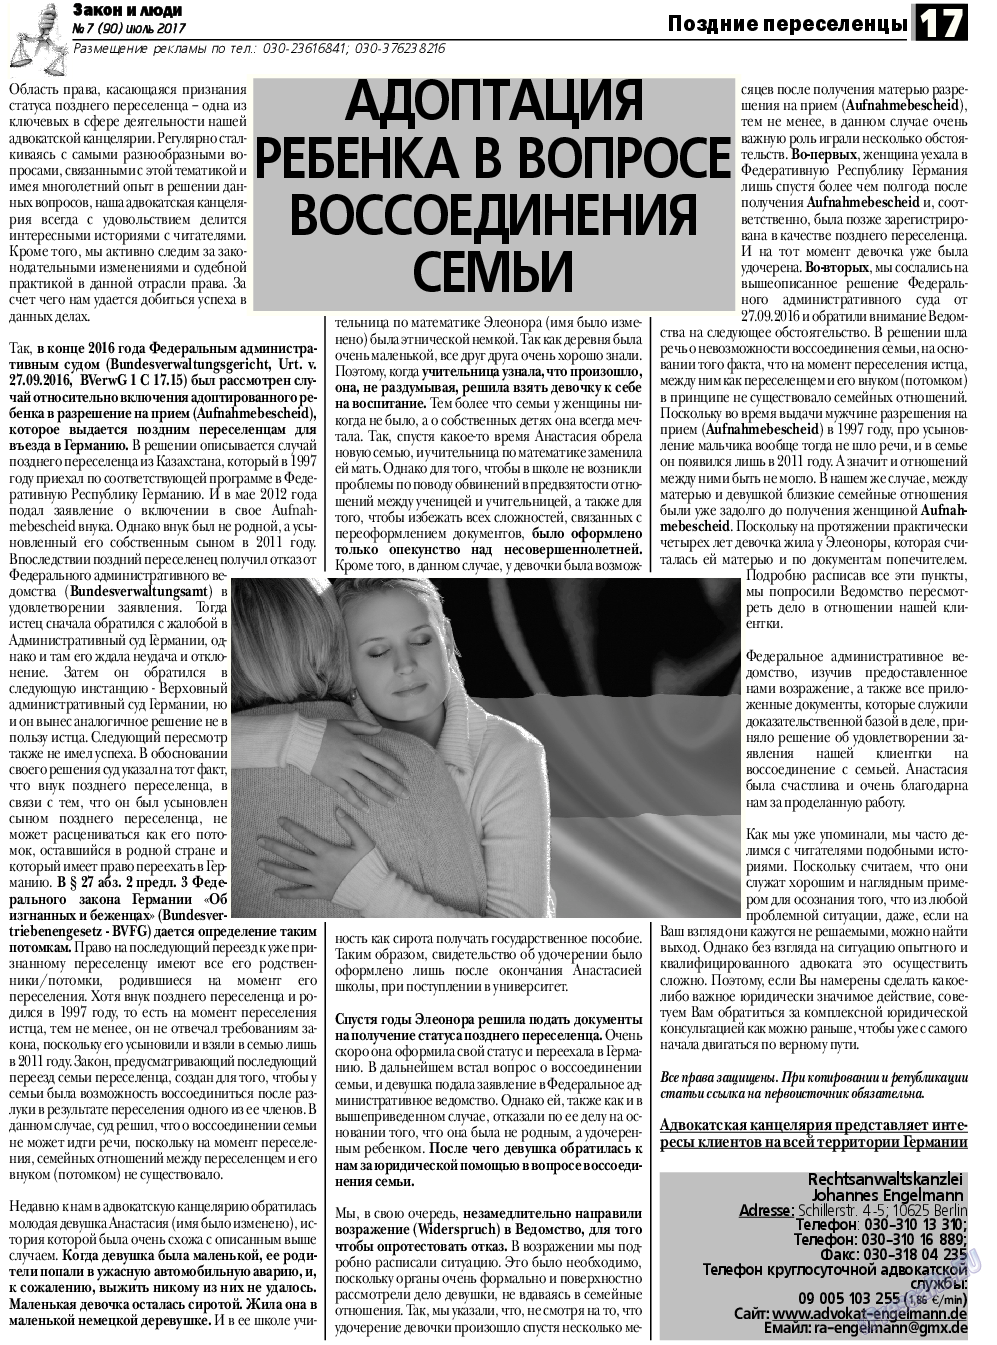 Закон и люди, газета. 2017 №7 стр.17